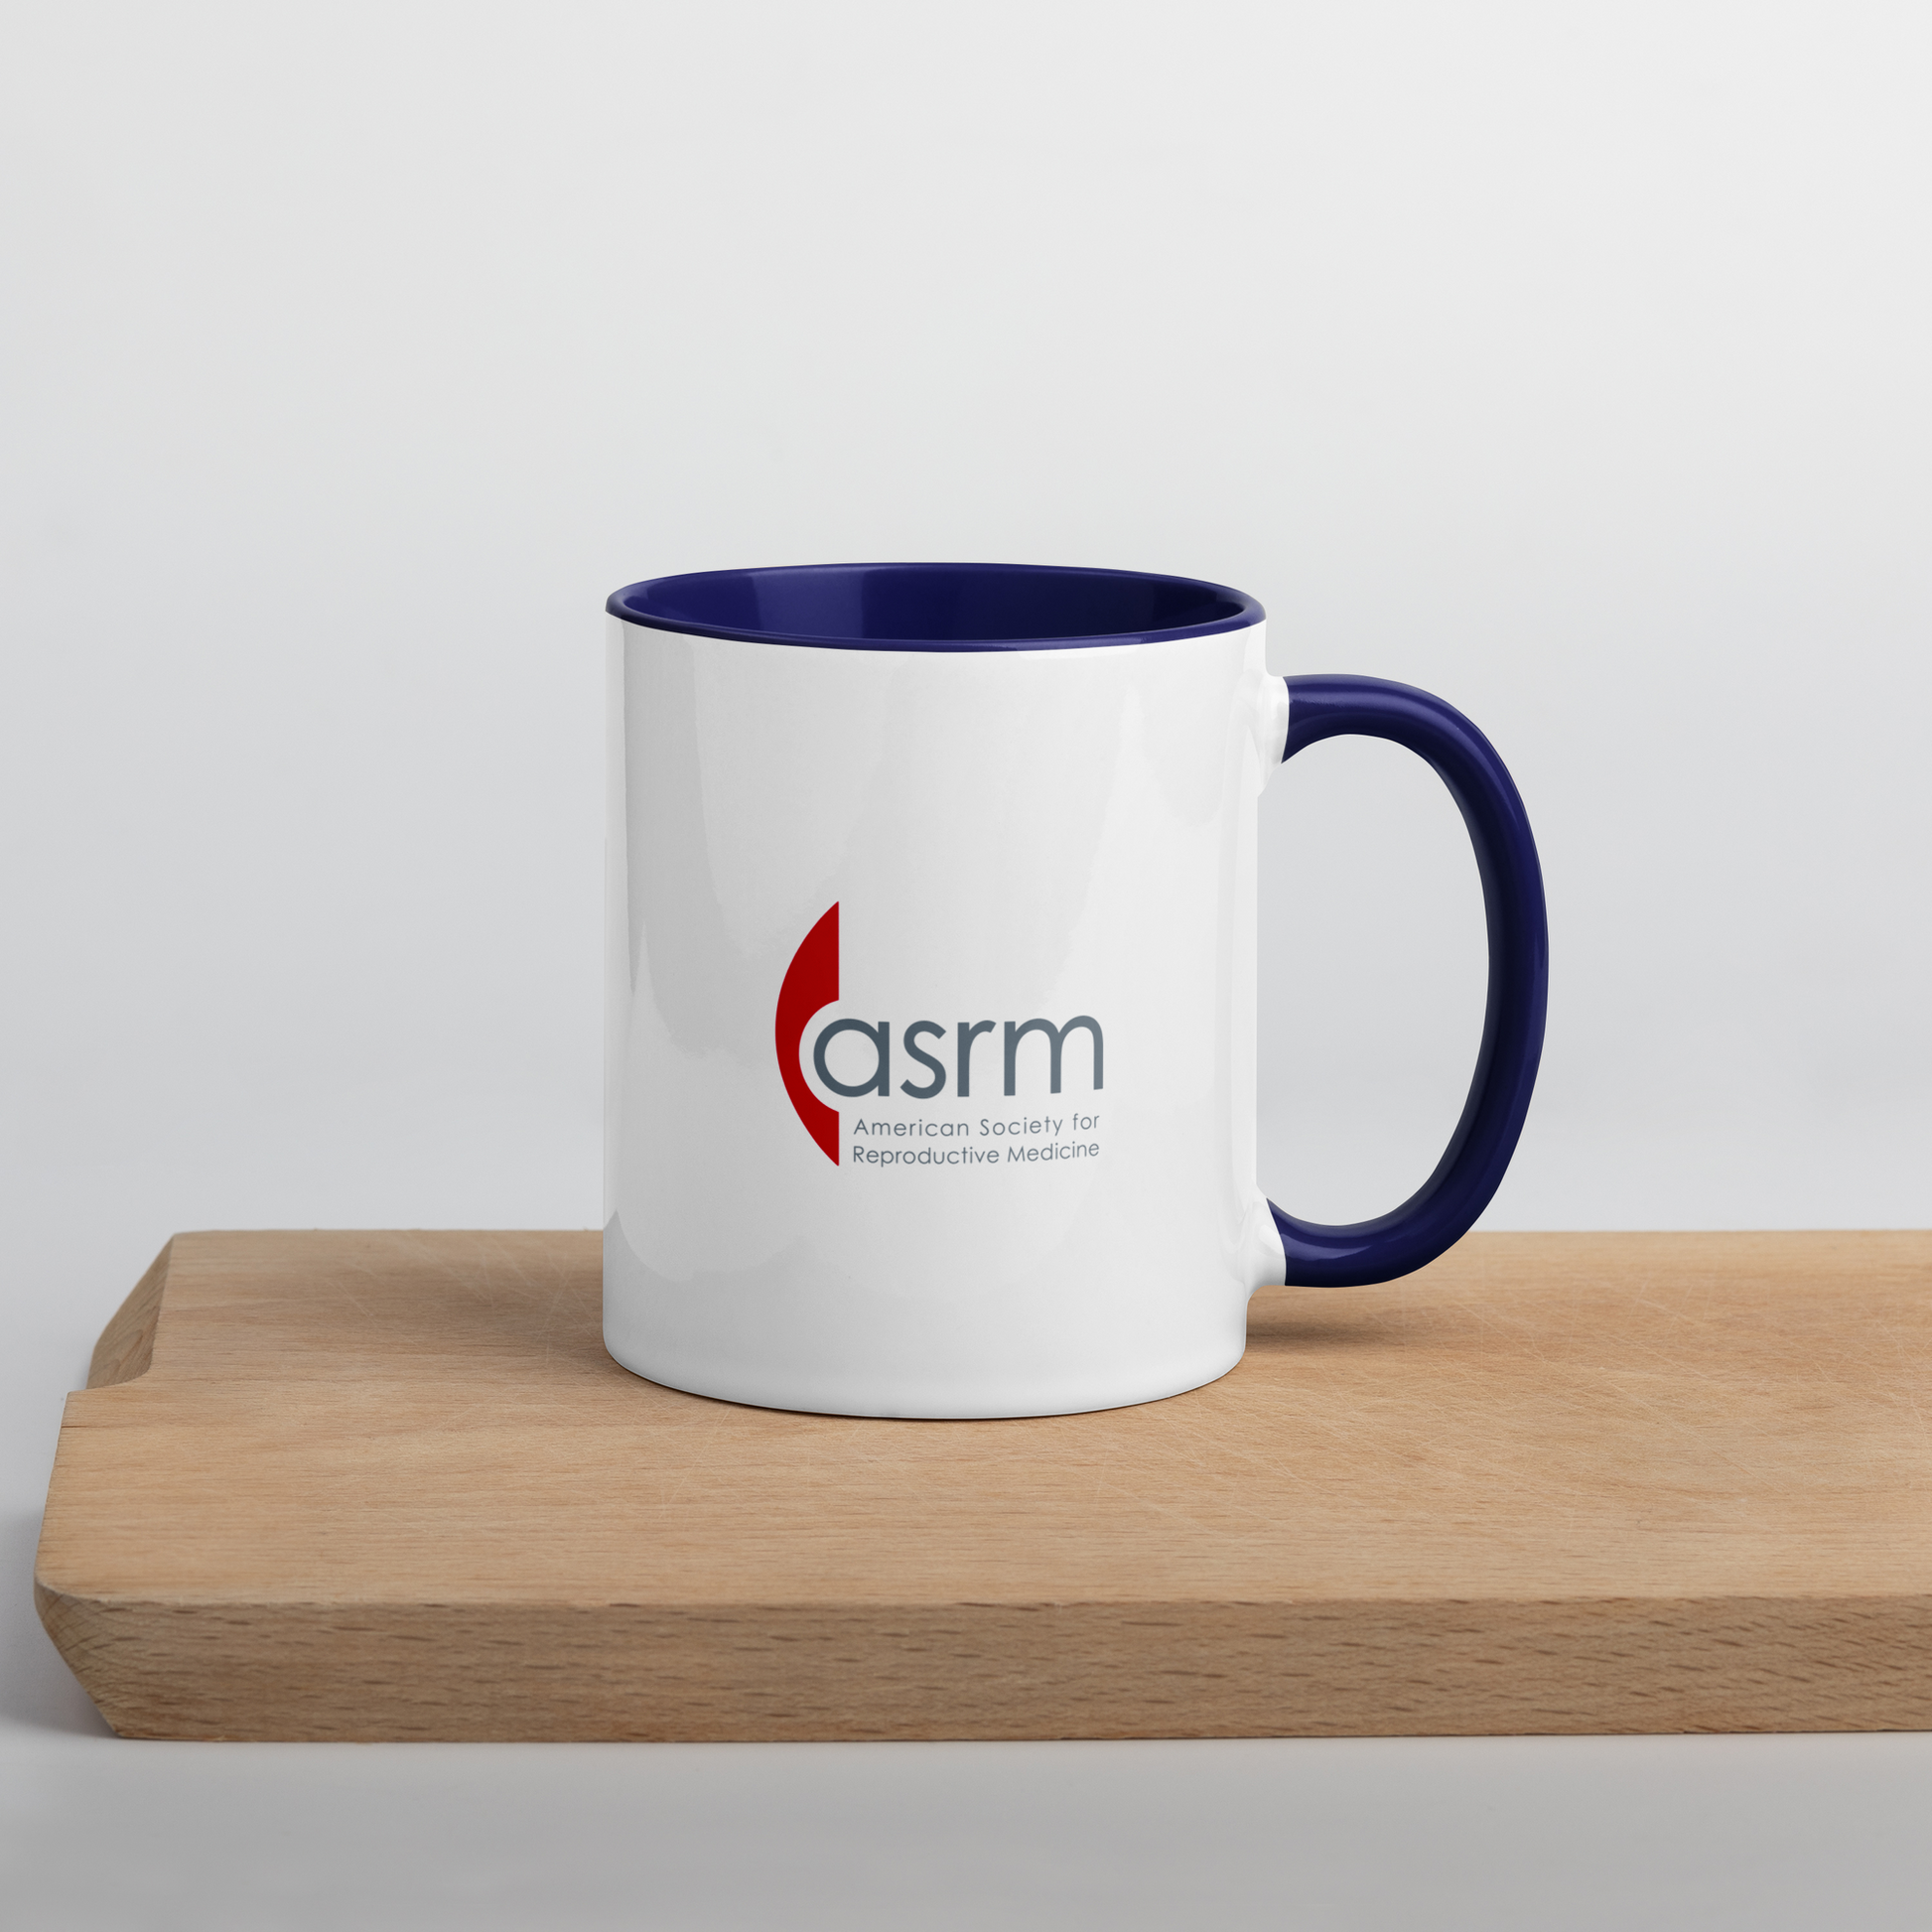 ASRM Logo Mug Modeled In Context